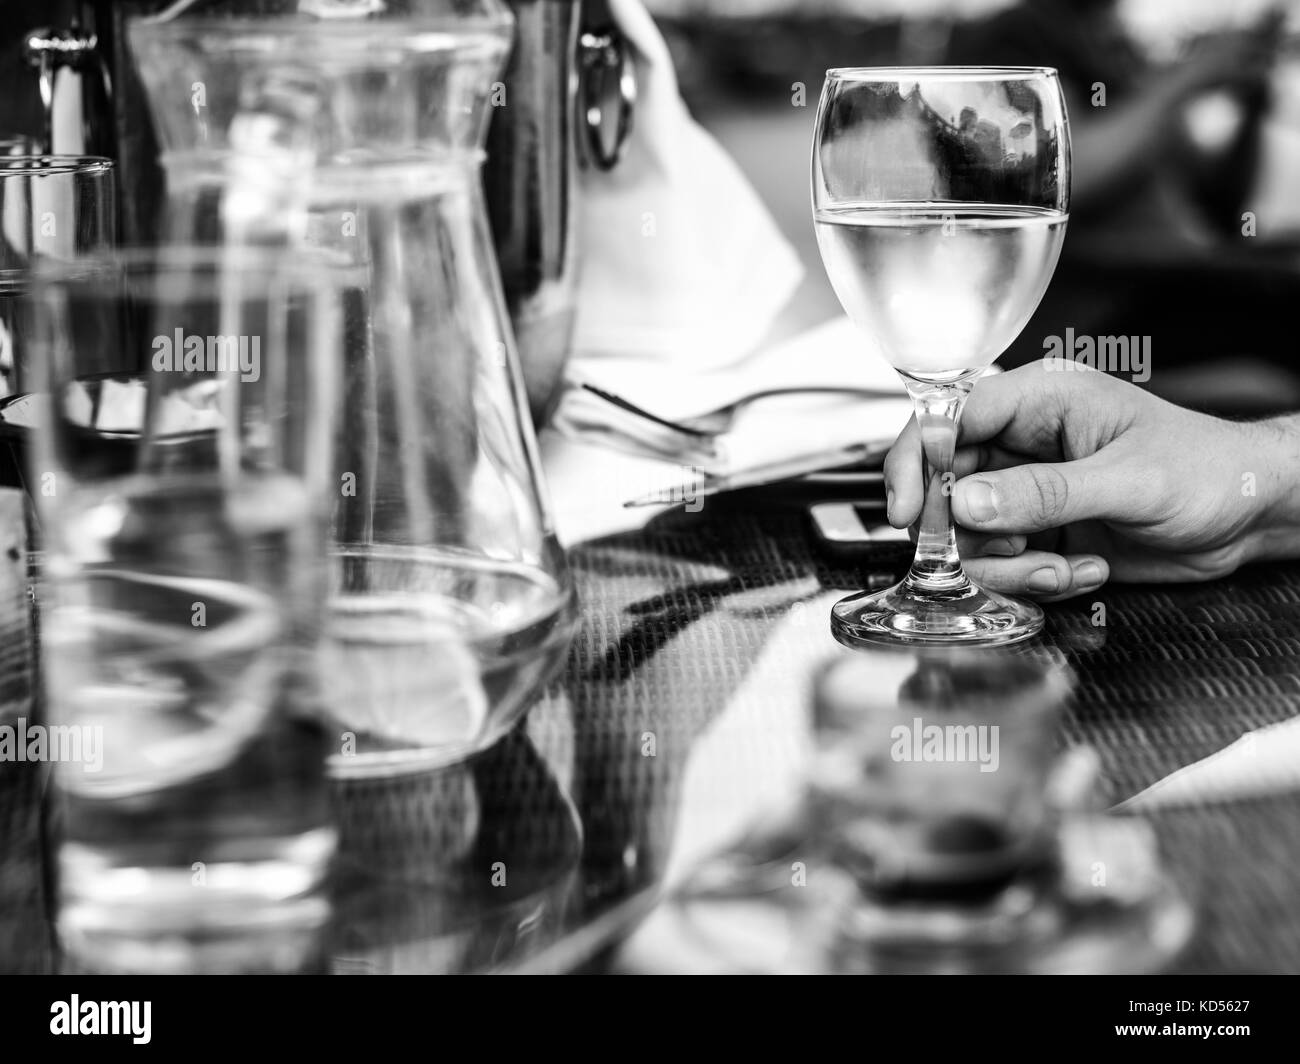 L'image monochrome noir et blanc d'un homme tenant un verre de vin blanc avec une cruche d'eau sur une table mise Banque D'Images